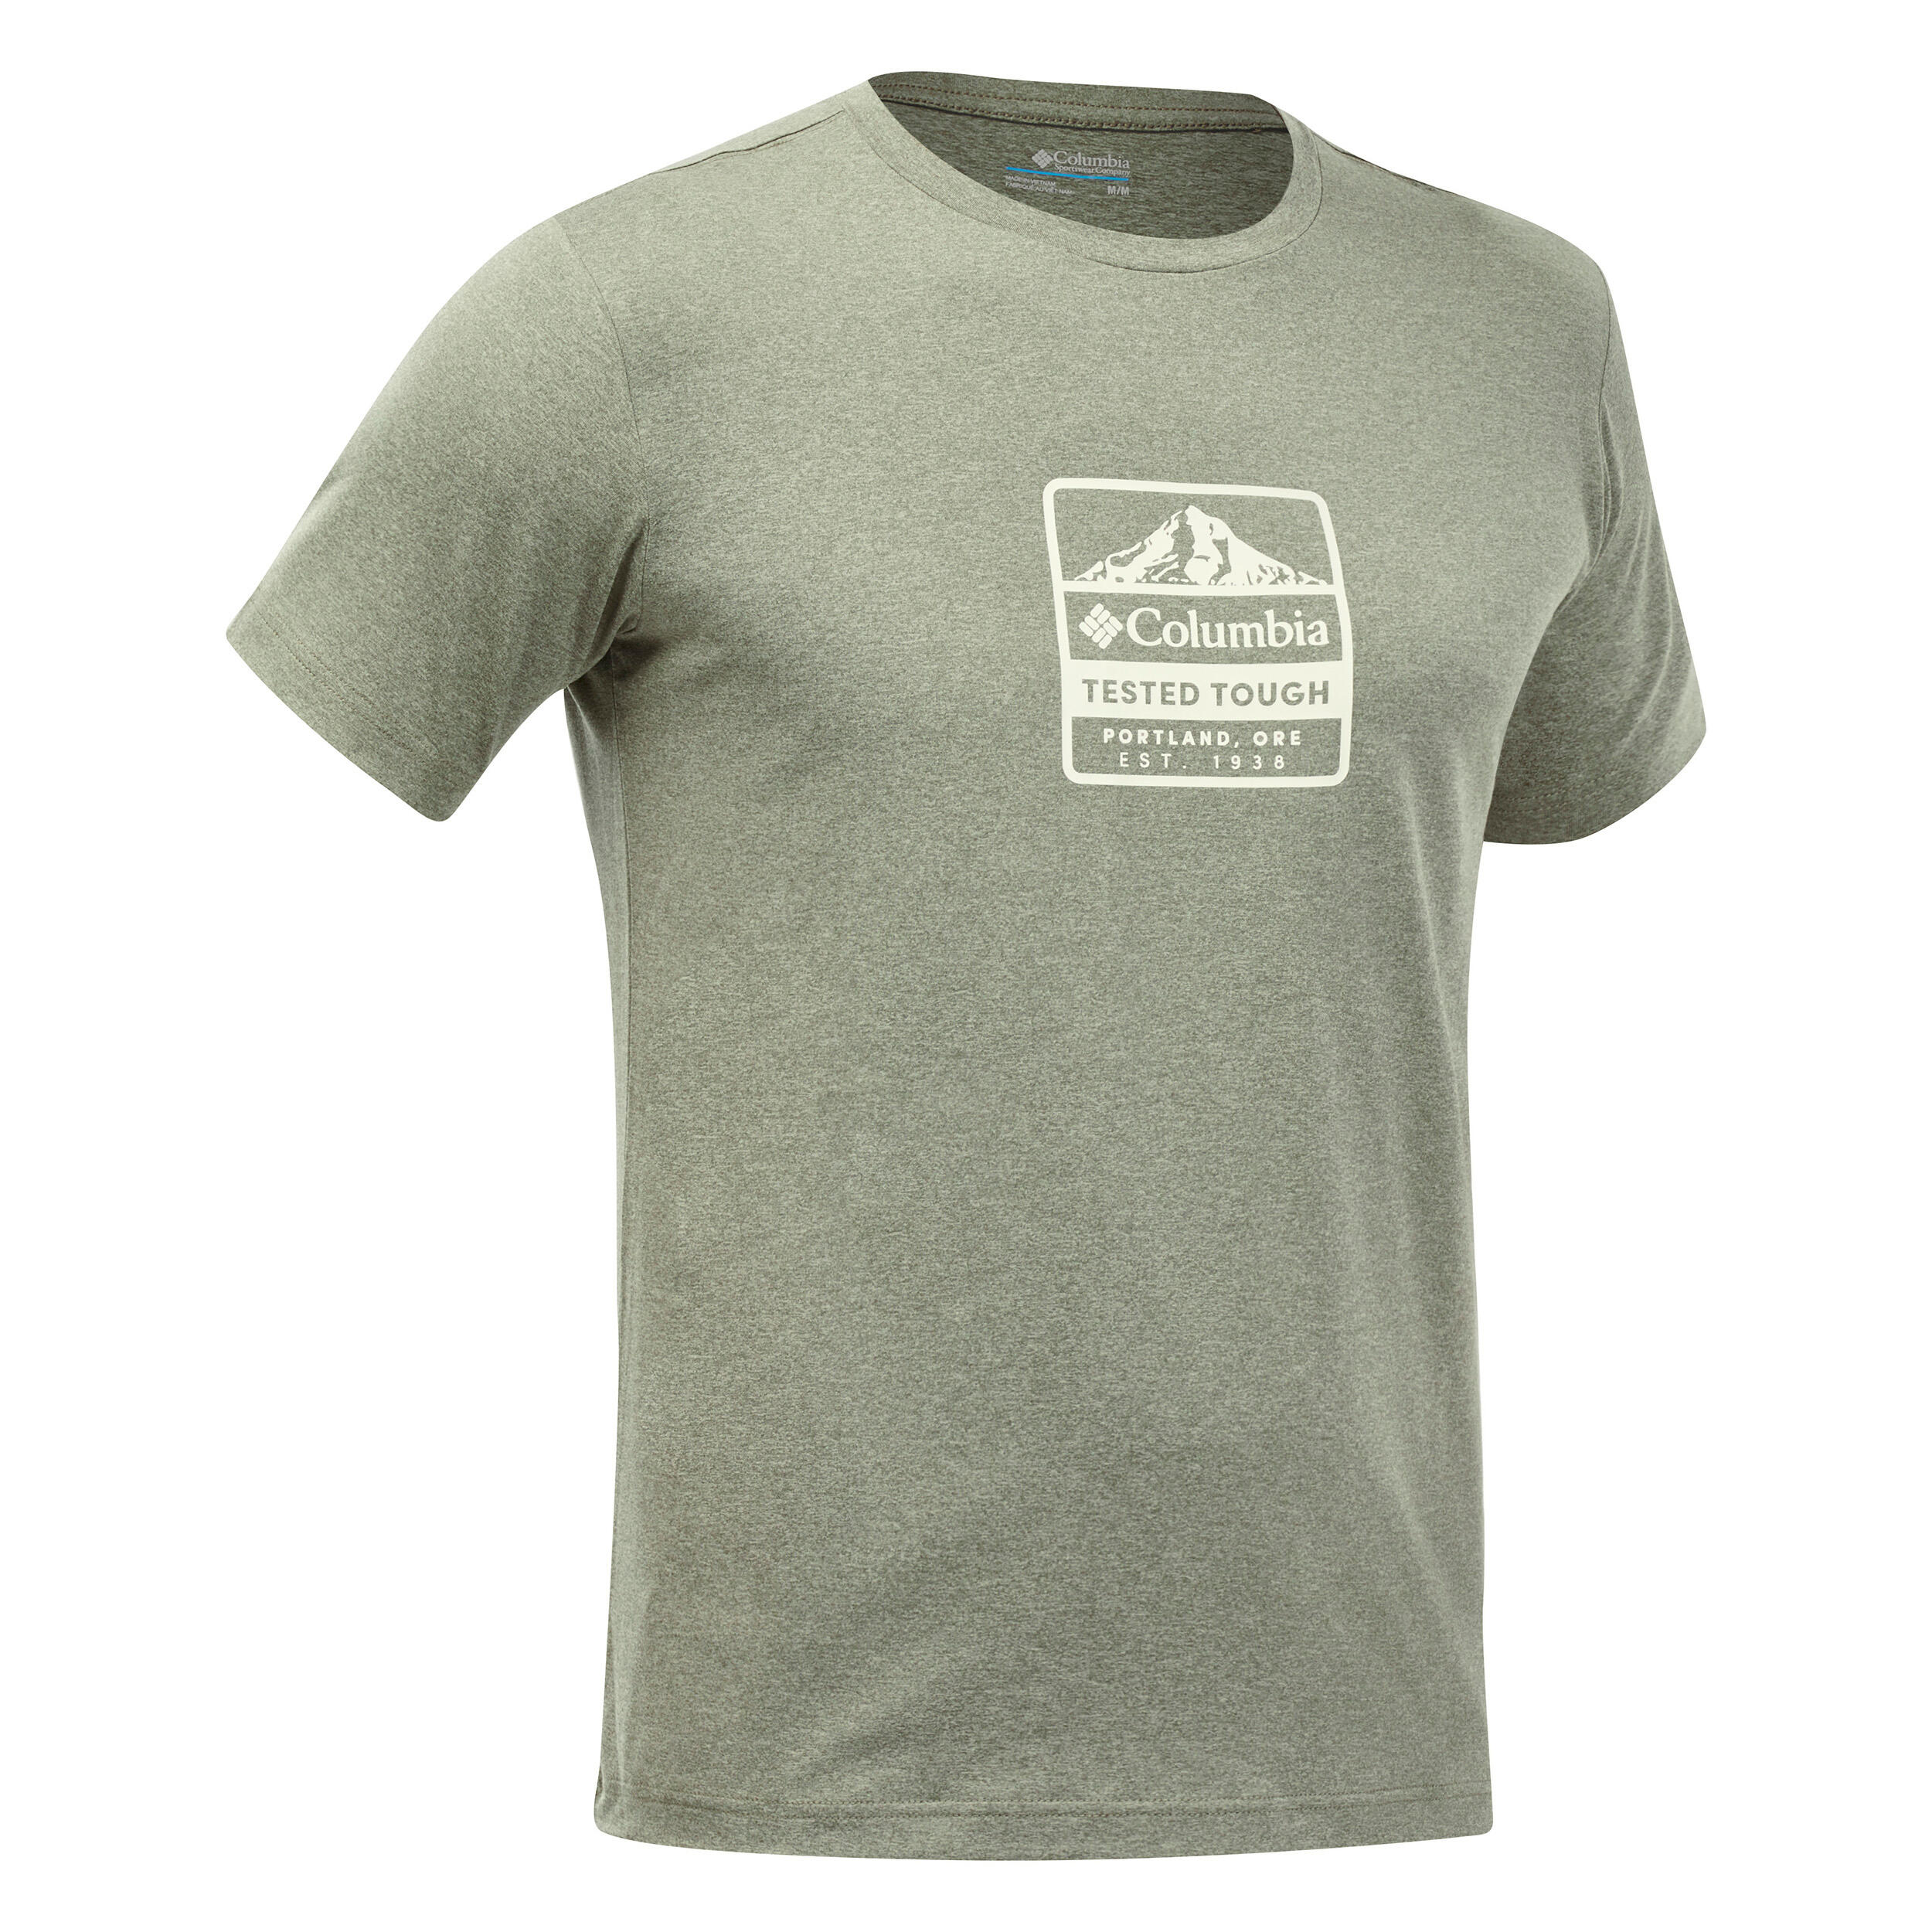 Mountain Walking Short-Sleeved T-Shirt - Columbia Tech Trail Green 1/4